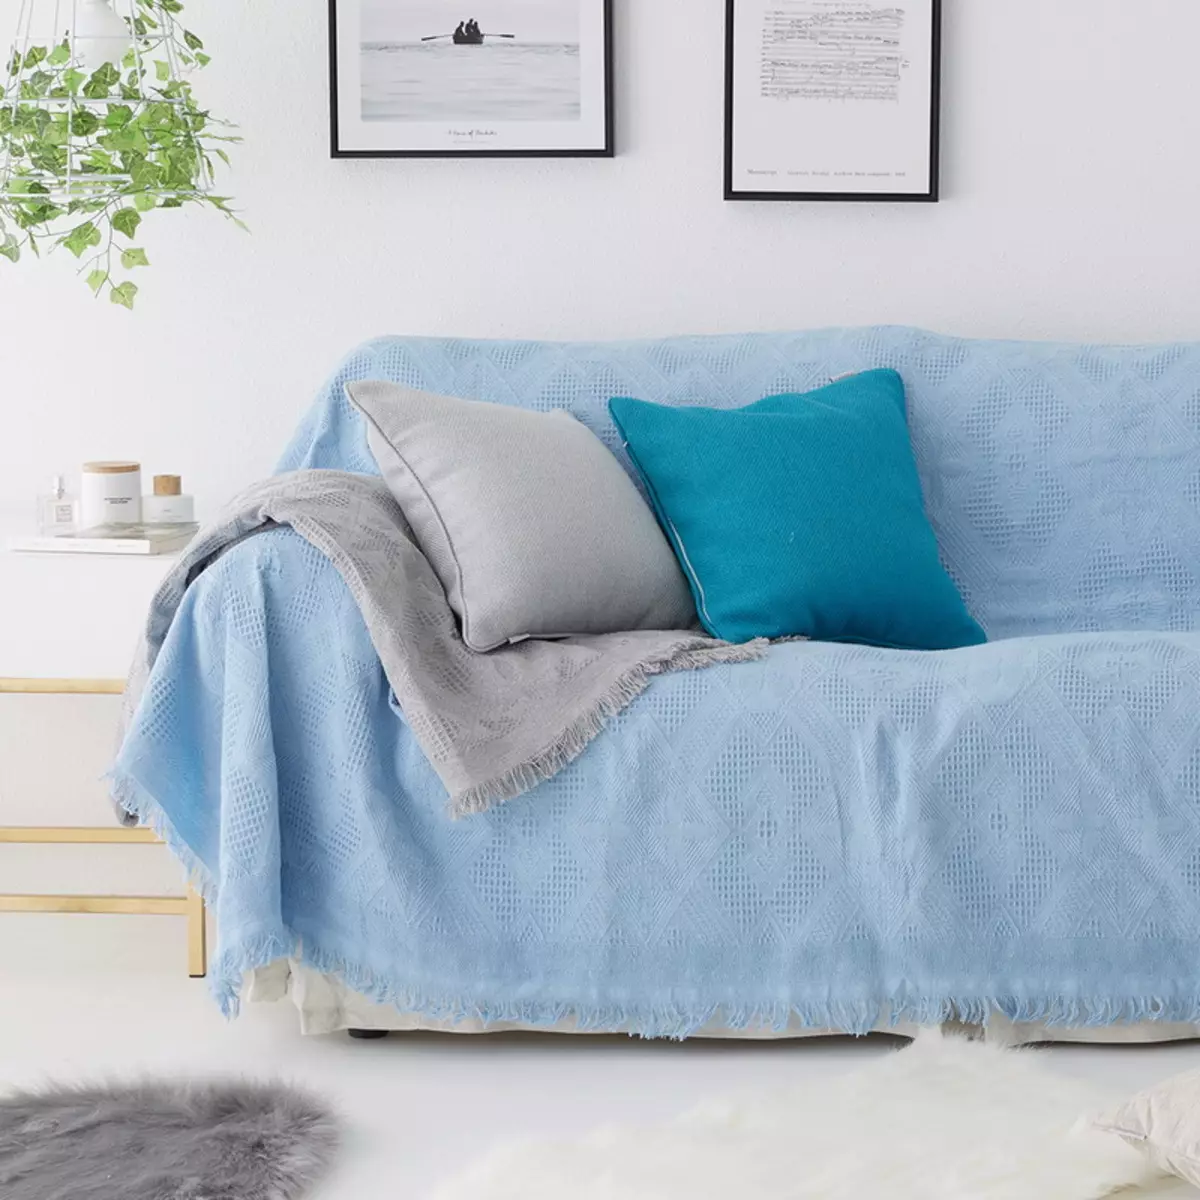 مورد بر روی مبل Ikea: انتخاب تخت خواب برای مبل های گوشه ای بدون دستگیره، پوشش های جهانی و سایر گزینه ها 8963_40